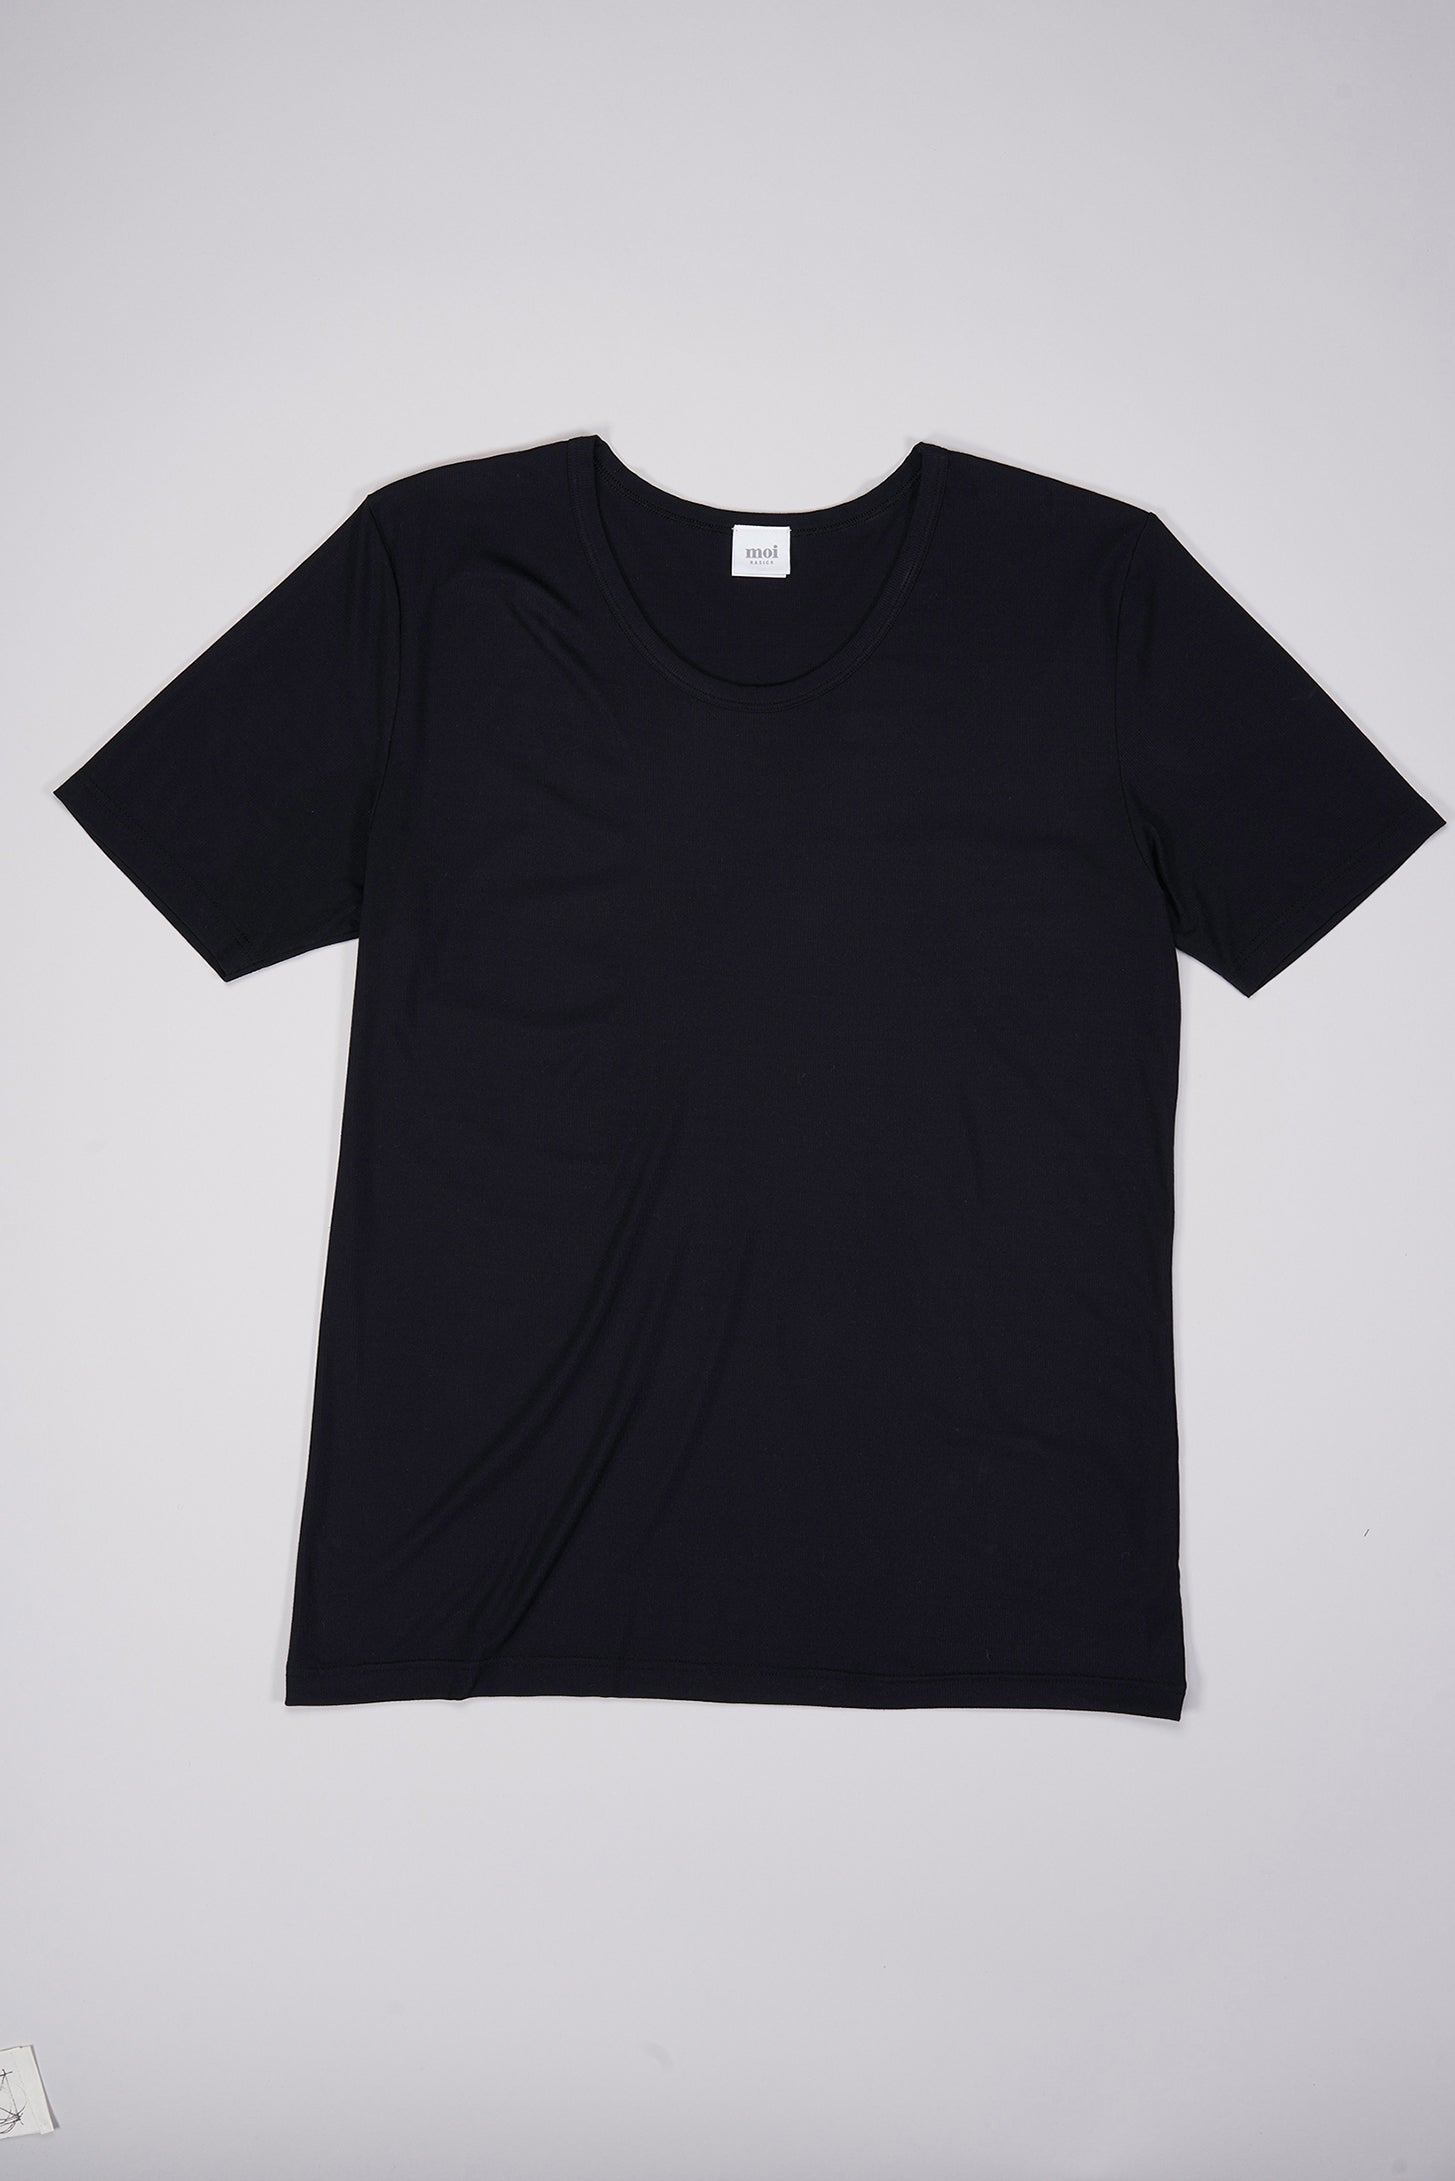 T-shirt in schwarz aus natürlichem MicroModal von moi-basics